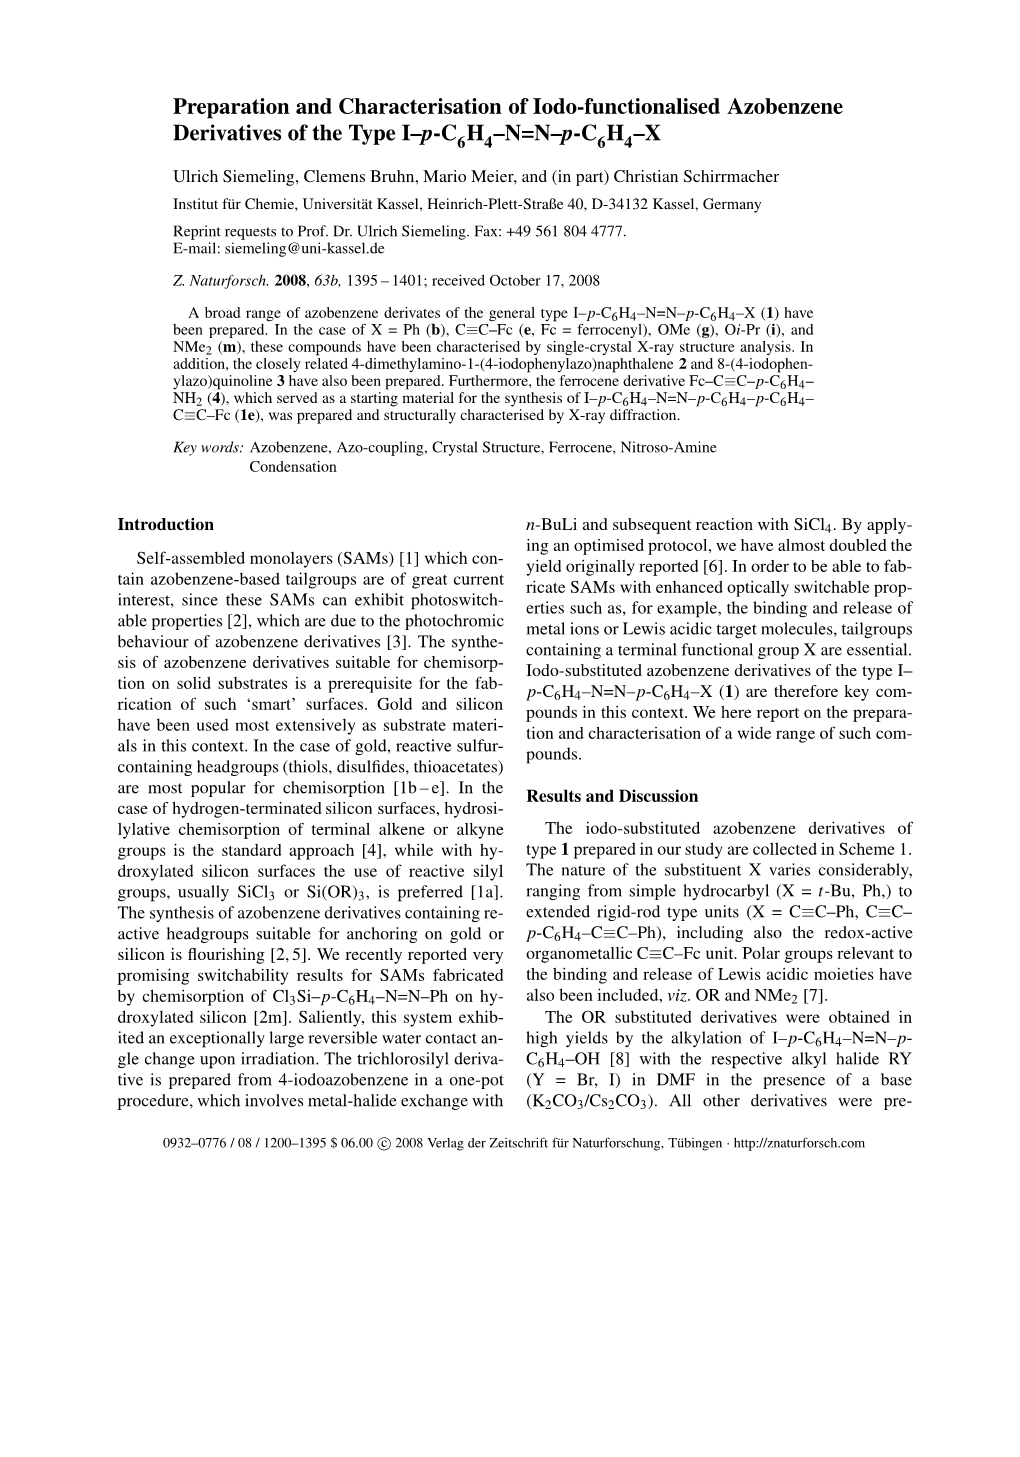 Preparation and Characterisation of Iodo-Functionalised Azobenzene